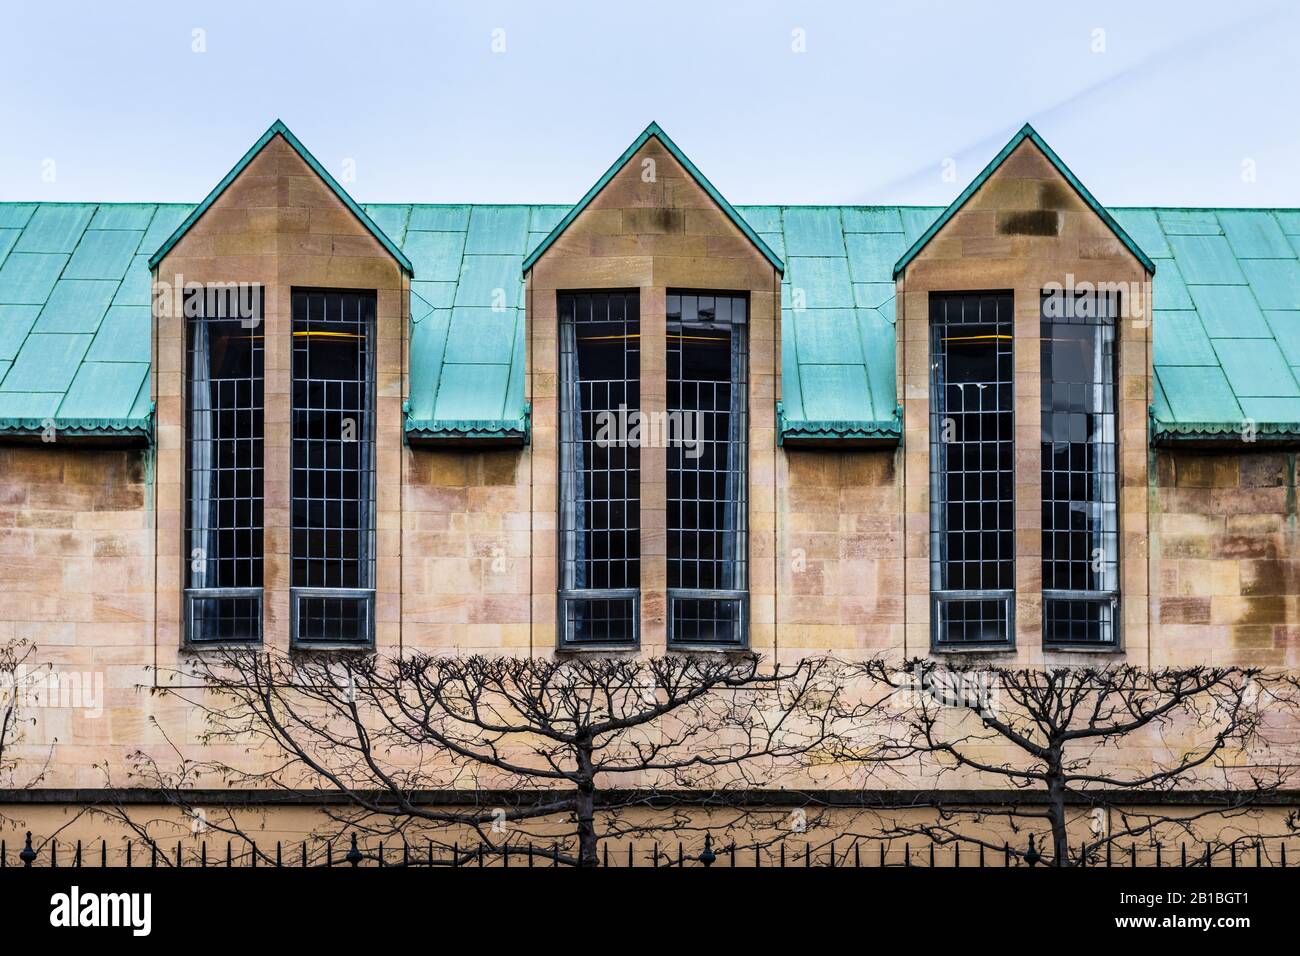 Die Upper Hall Emmanuel College Cambridge University. Erweiterung des Haupteingangsgebäudes, Architekt Robert Hurd, 1959. Schottischer Lowlands Stil. Stockfoto